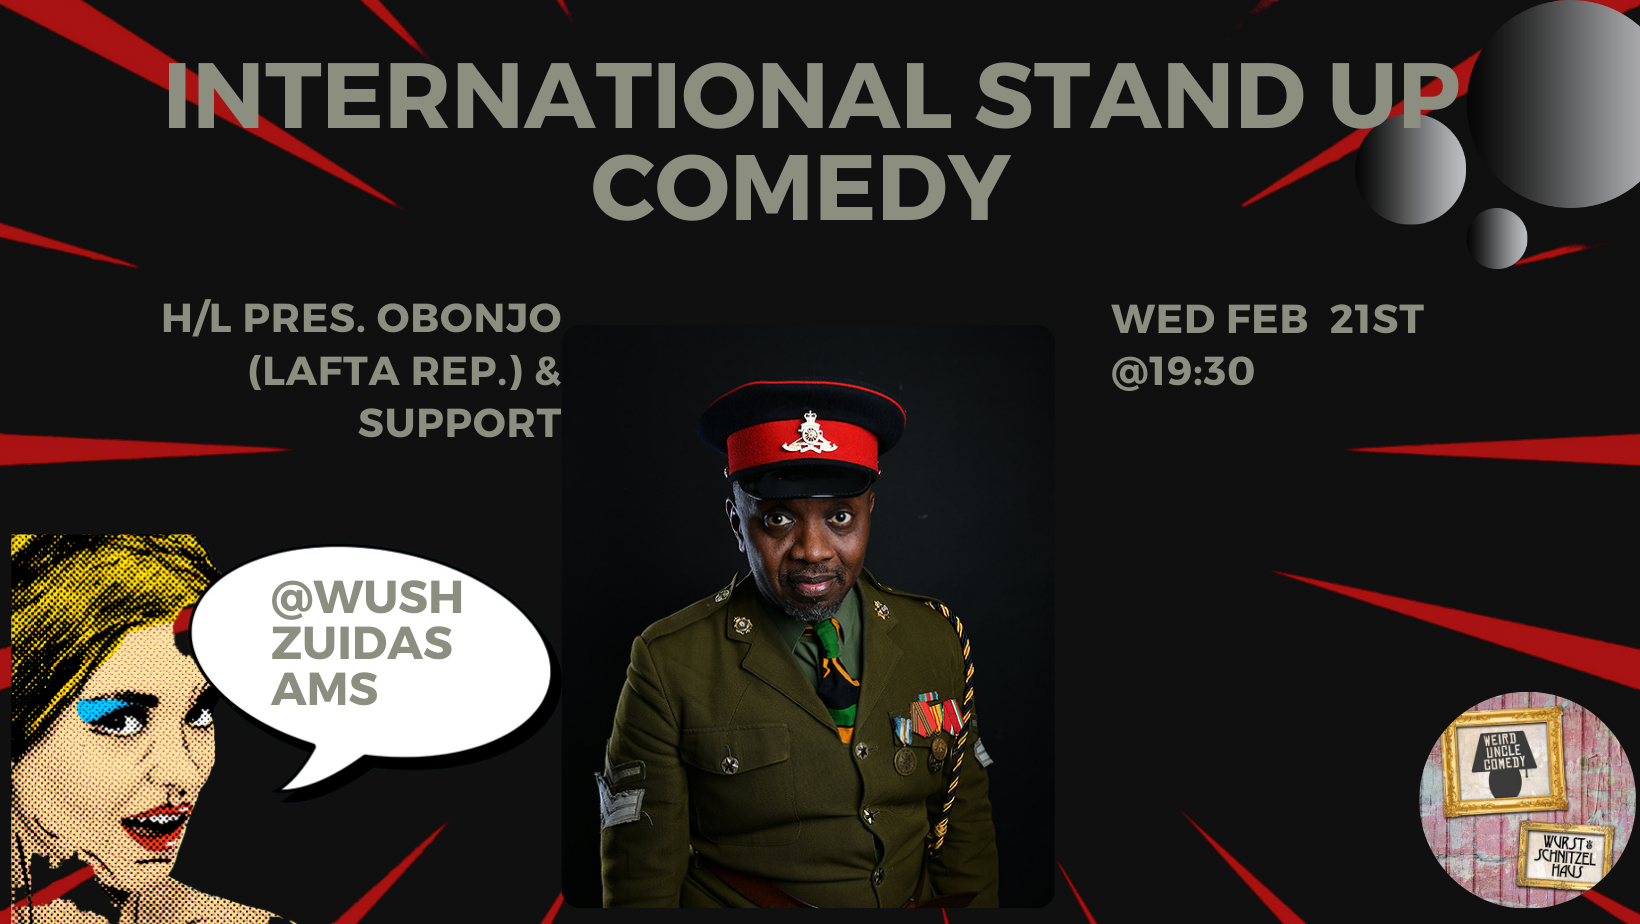 Ticket kopen voor evenement Intl Stand Up Comedy @WuSH Zuidas